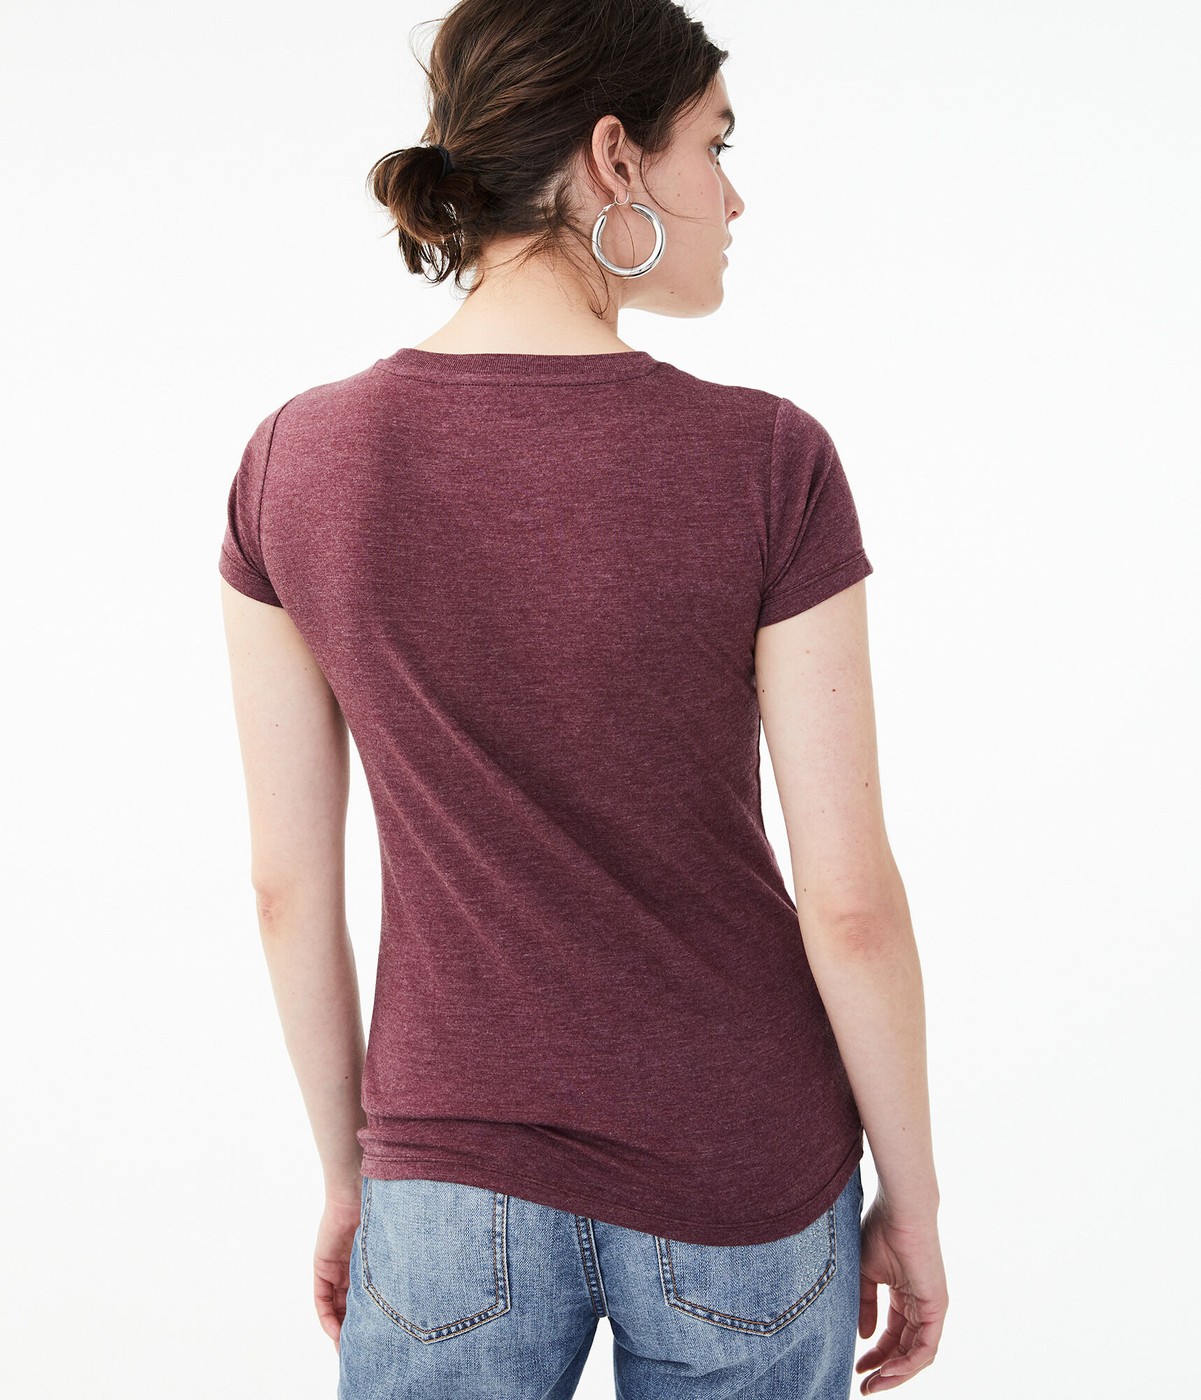 Бордовая футболка - женская футболка Aeropostale